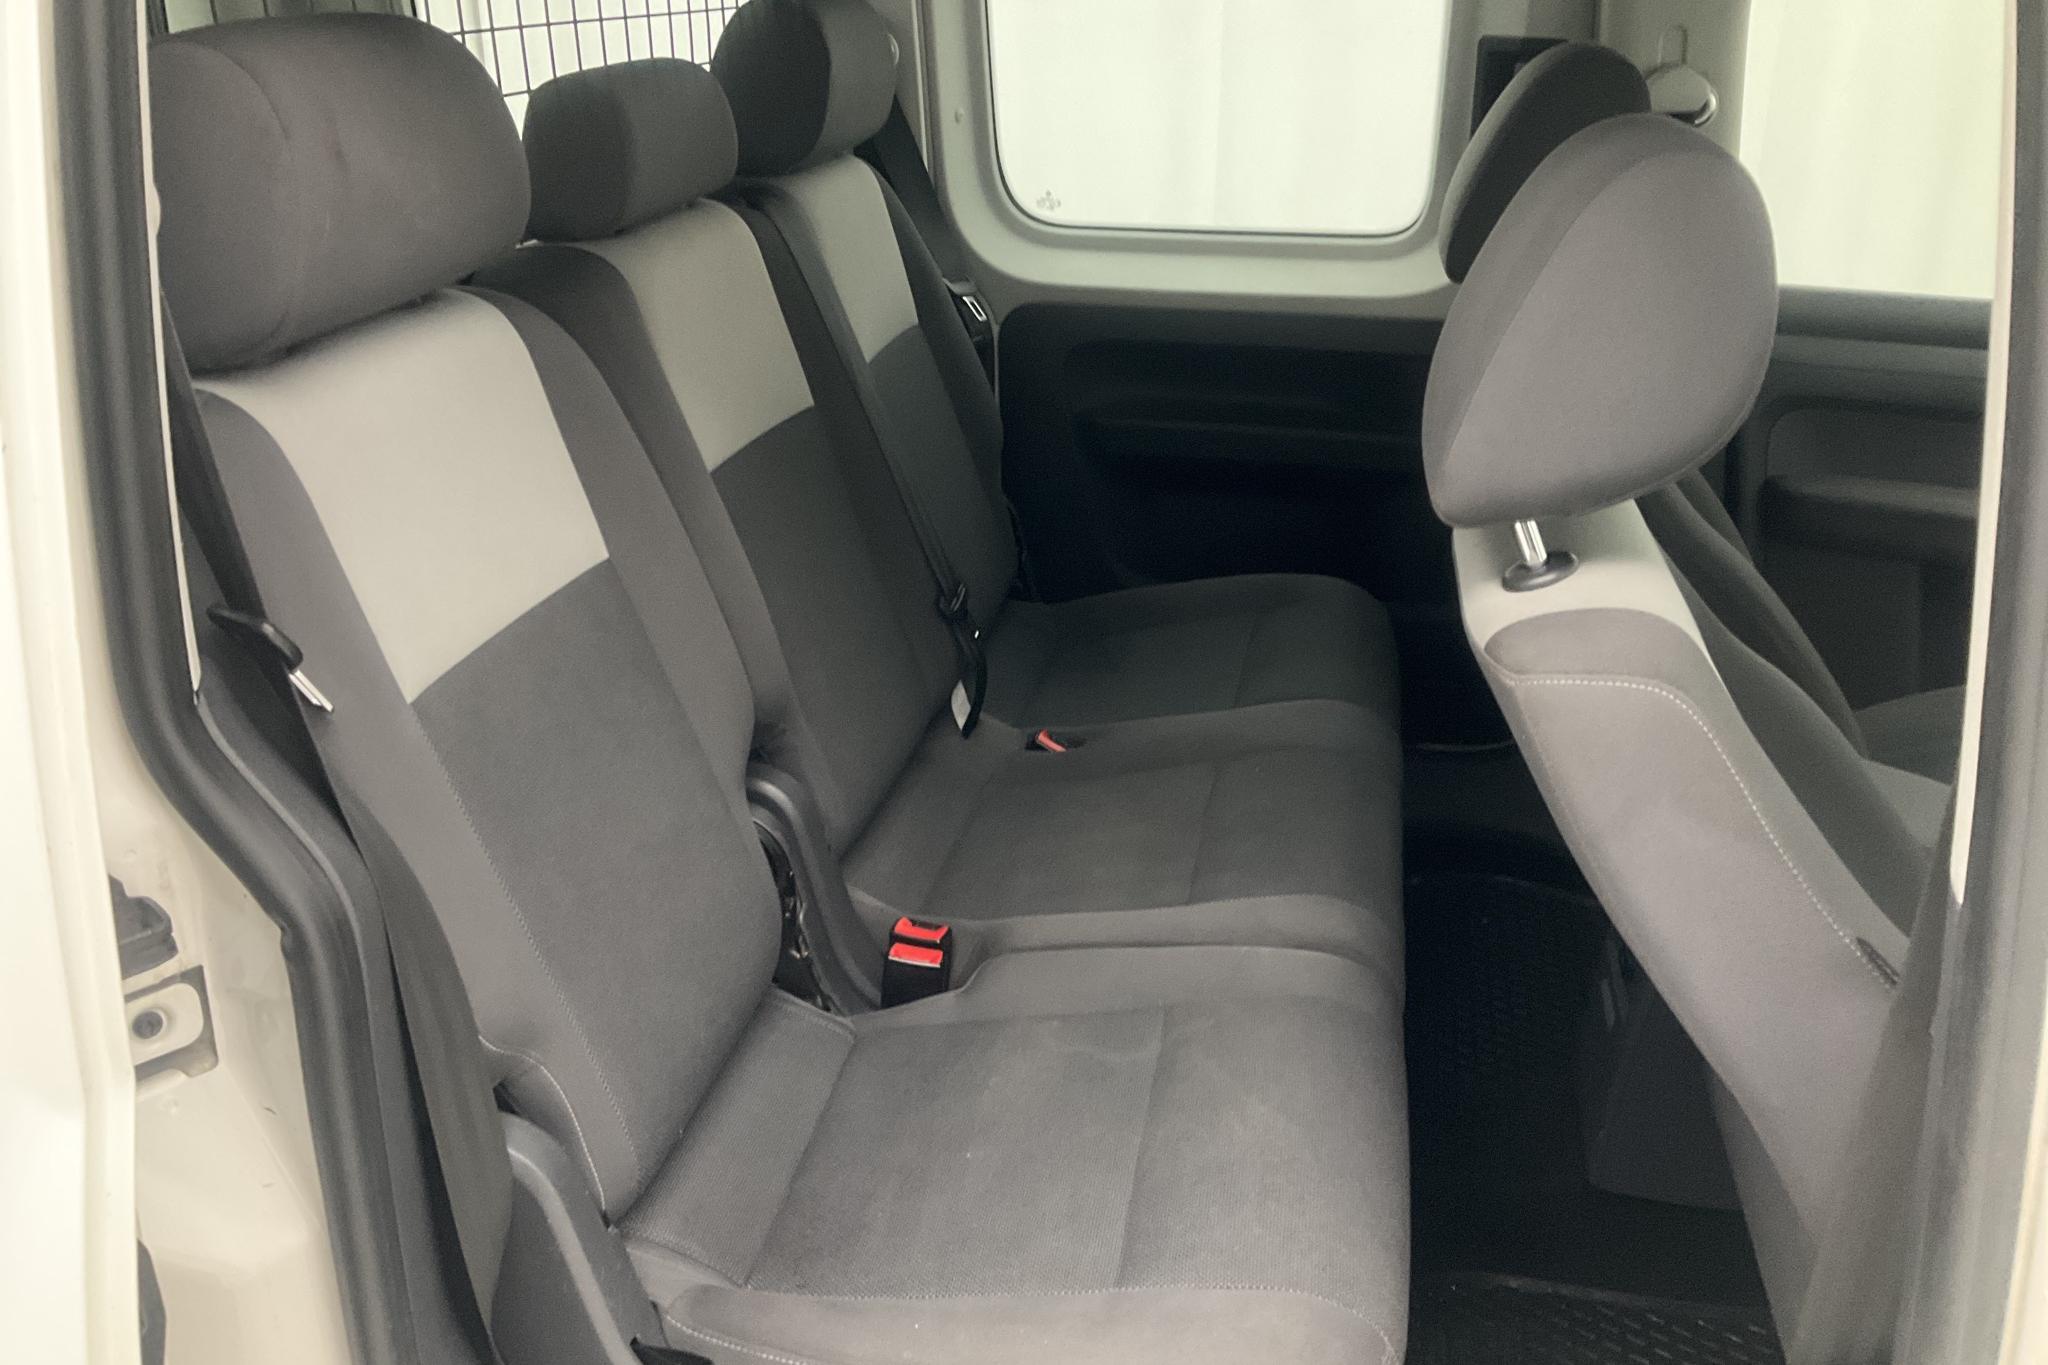 VW Caddy MPV 1.6 TDI (102hk) - 80 590 km - Manual - white - 2014